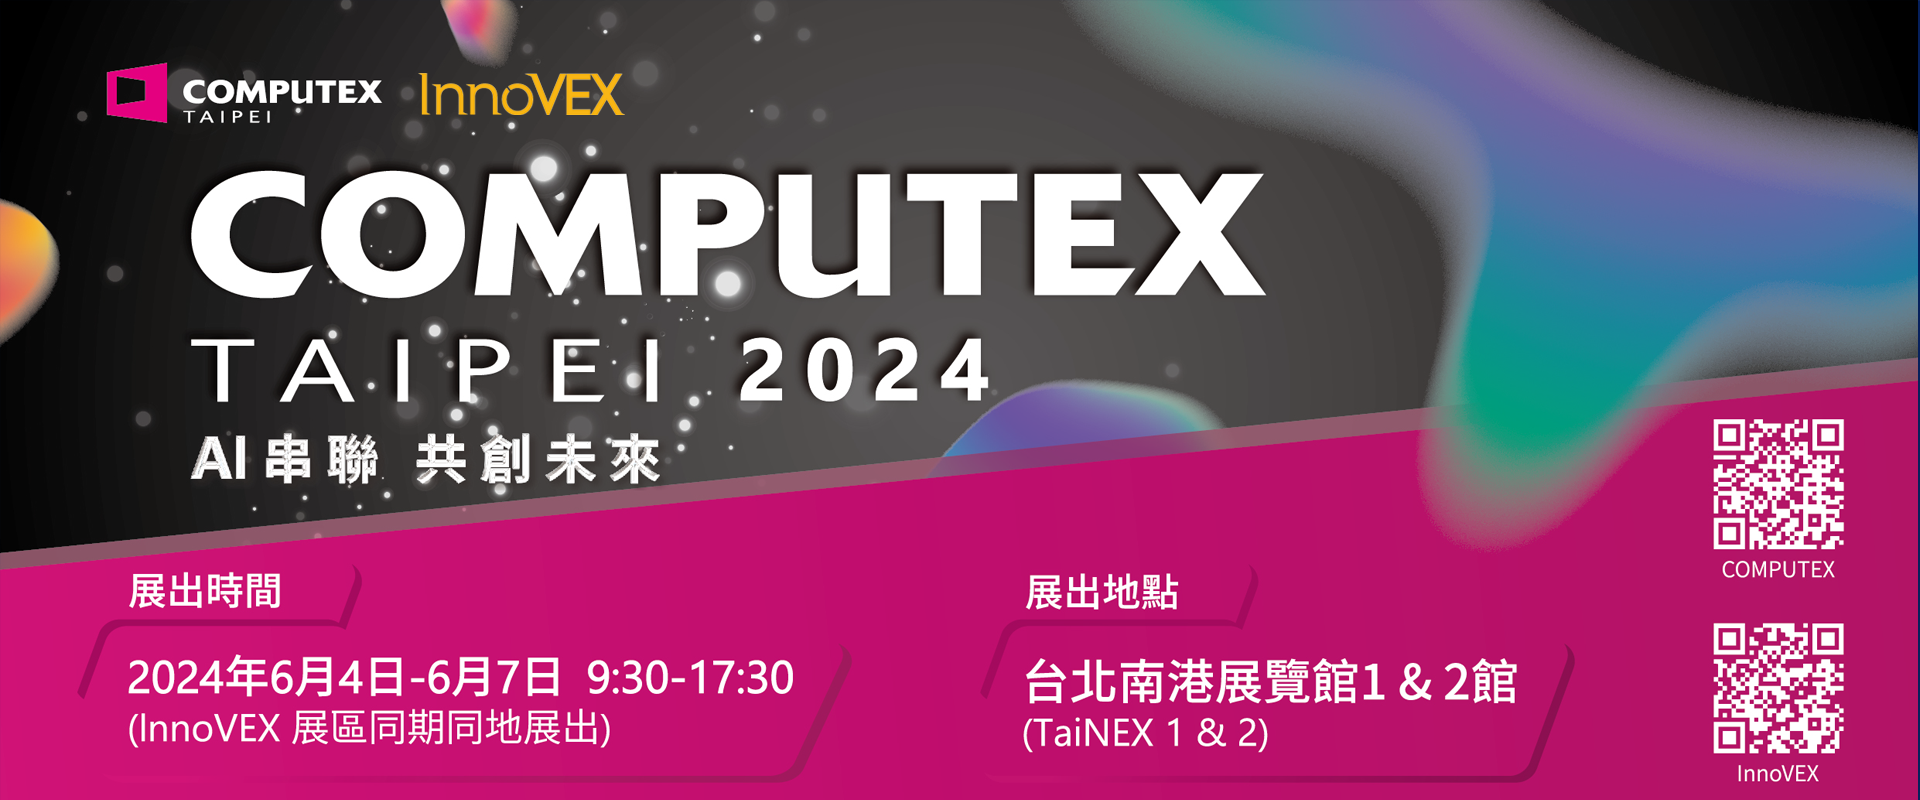 2024 台北國際電腦展 COMPUTEX - InnoVEX